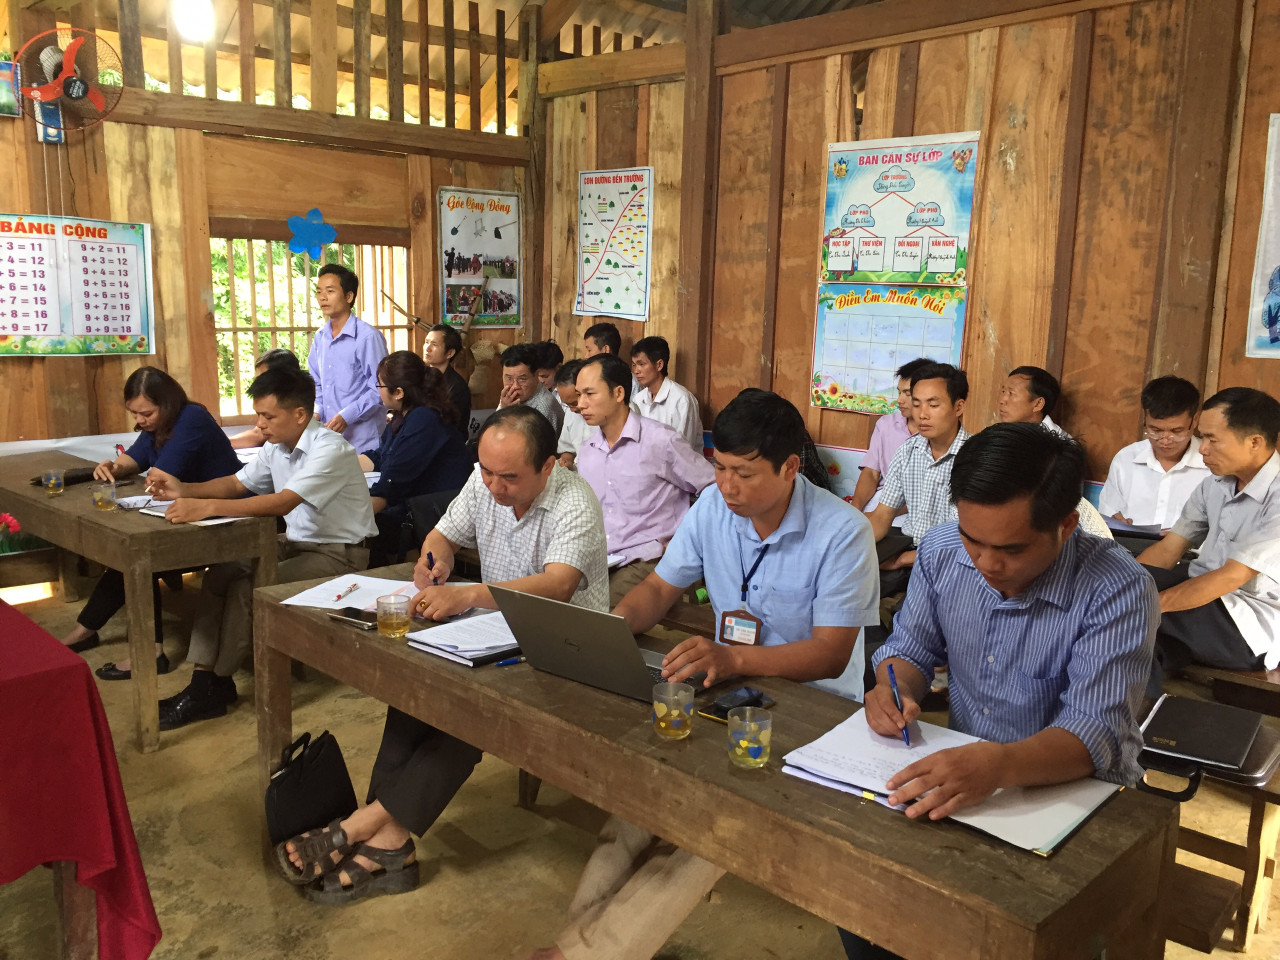 Đoàn giám sát HĐND huyện Bắc Quang giám sát UBND thị trấn Vĩnh Tuy về công tác dạy nghề, giải quyết việc làm trên địa bàn thị trấn